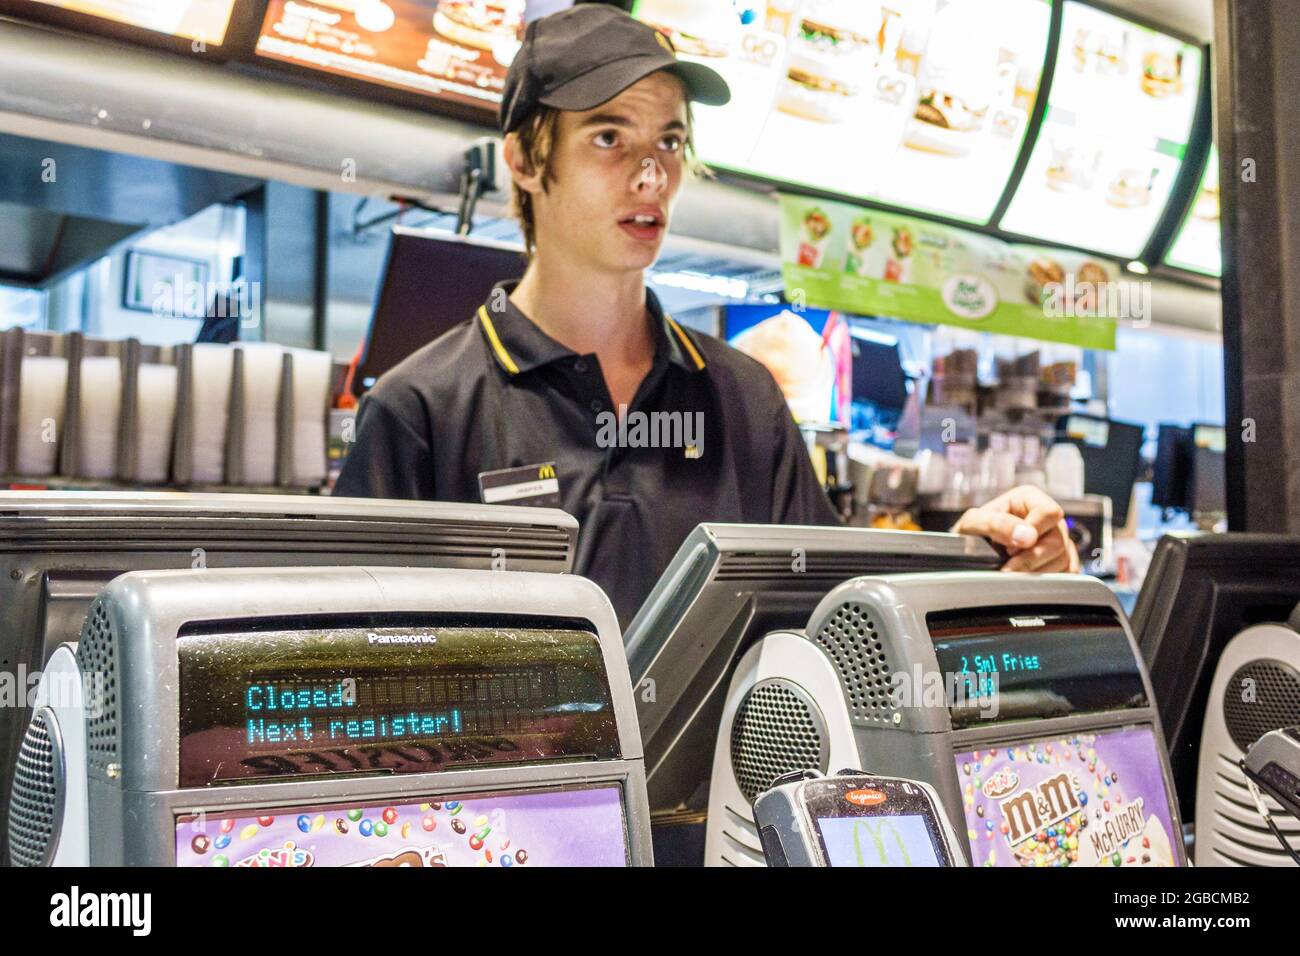 Sydney Australie, Bondi McDonald's restaurant fast food comptoir caisse enregistreuse, adolescent adolescent garçon homme employé travaillant sur commande, insid Banque D'Images